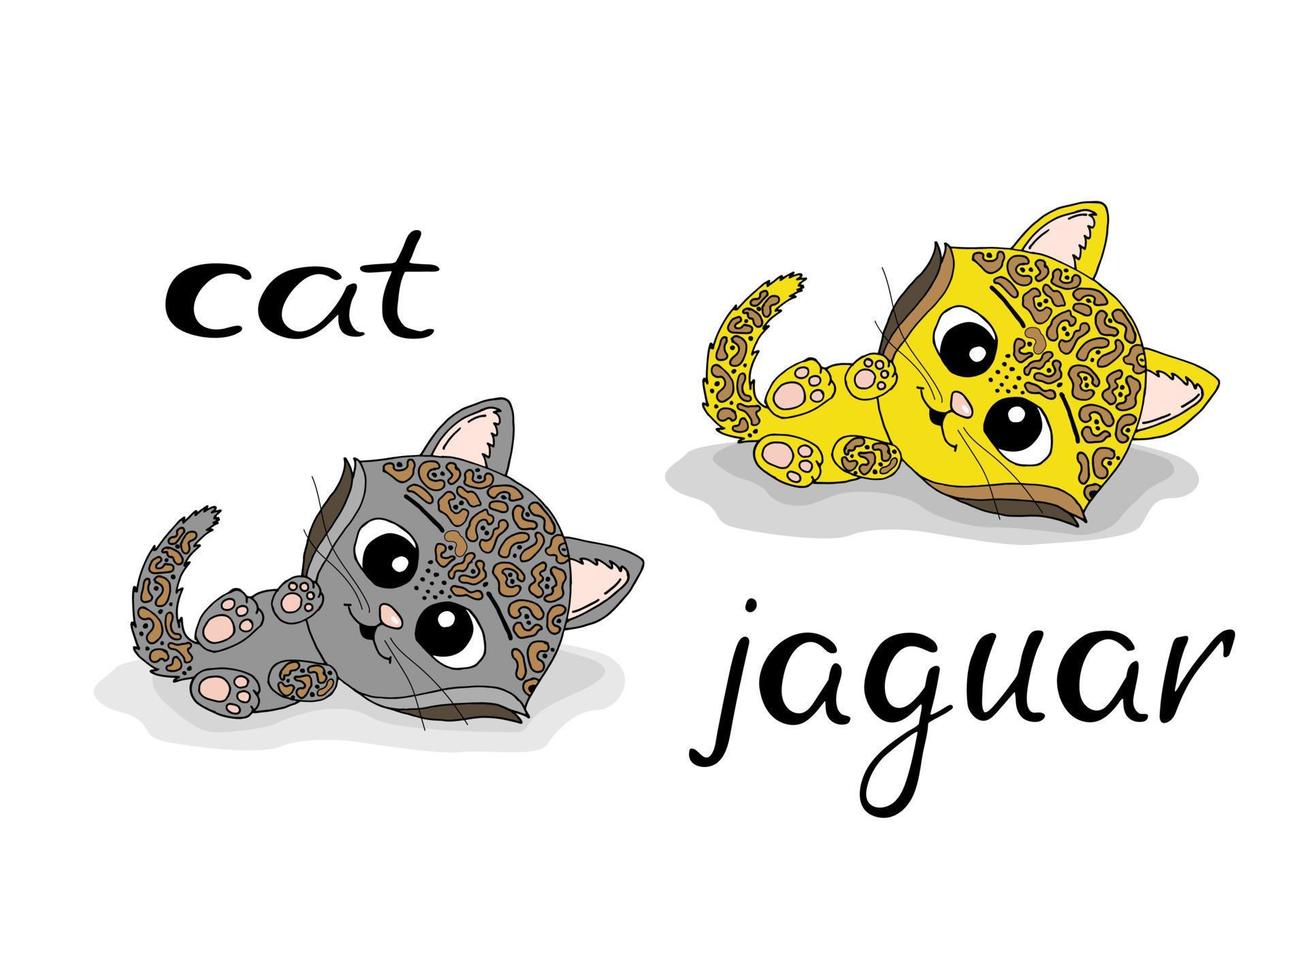 gato bonito dos desenhos animados e jaguar. design de ilustração vetorial para tecidos de moda, gráficos têxteis, estampas. vetor